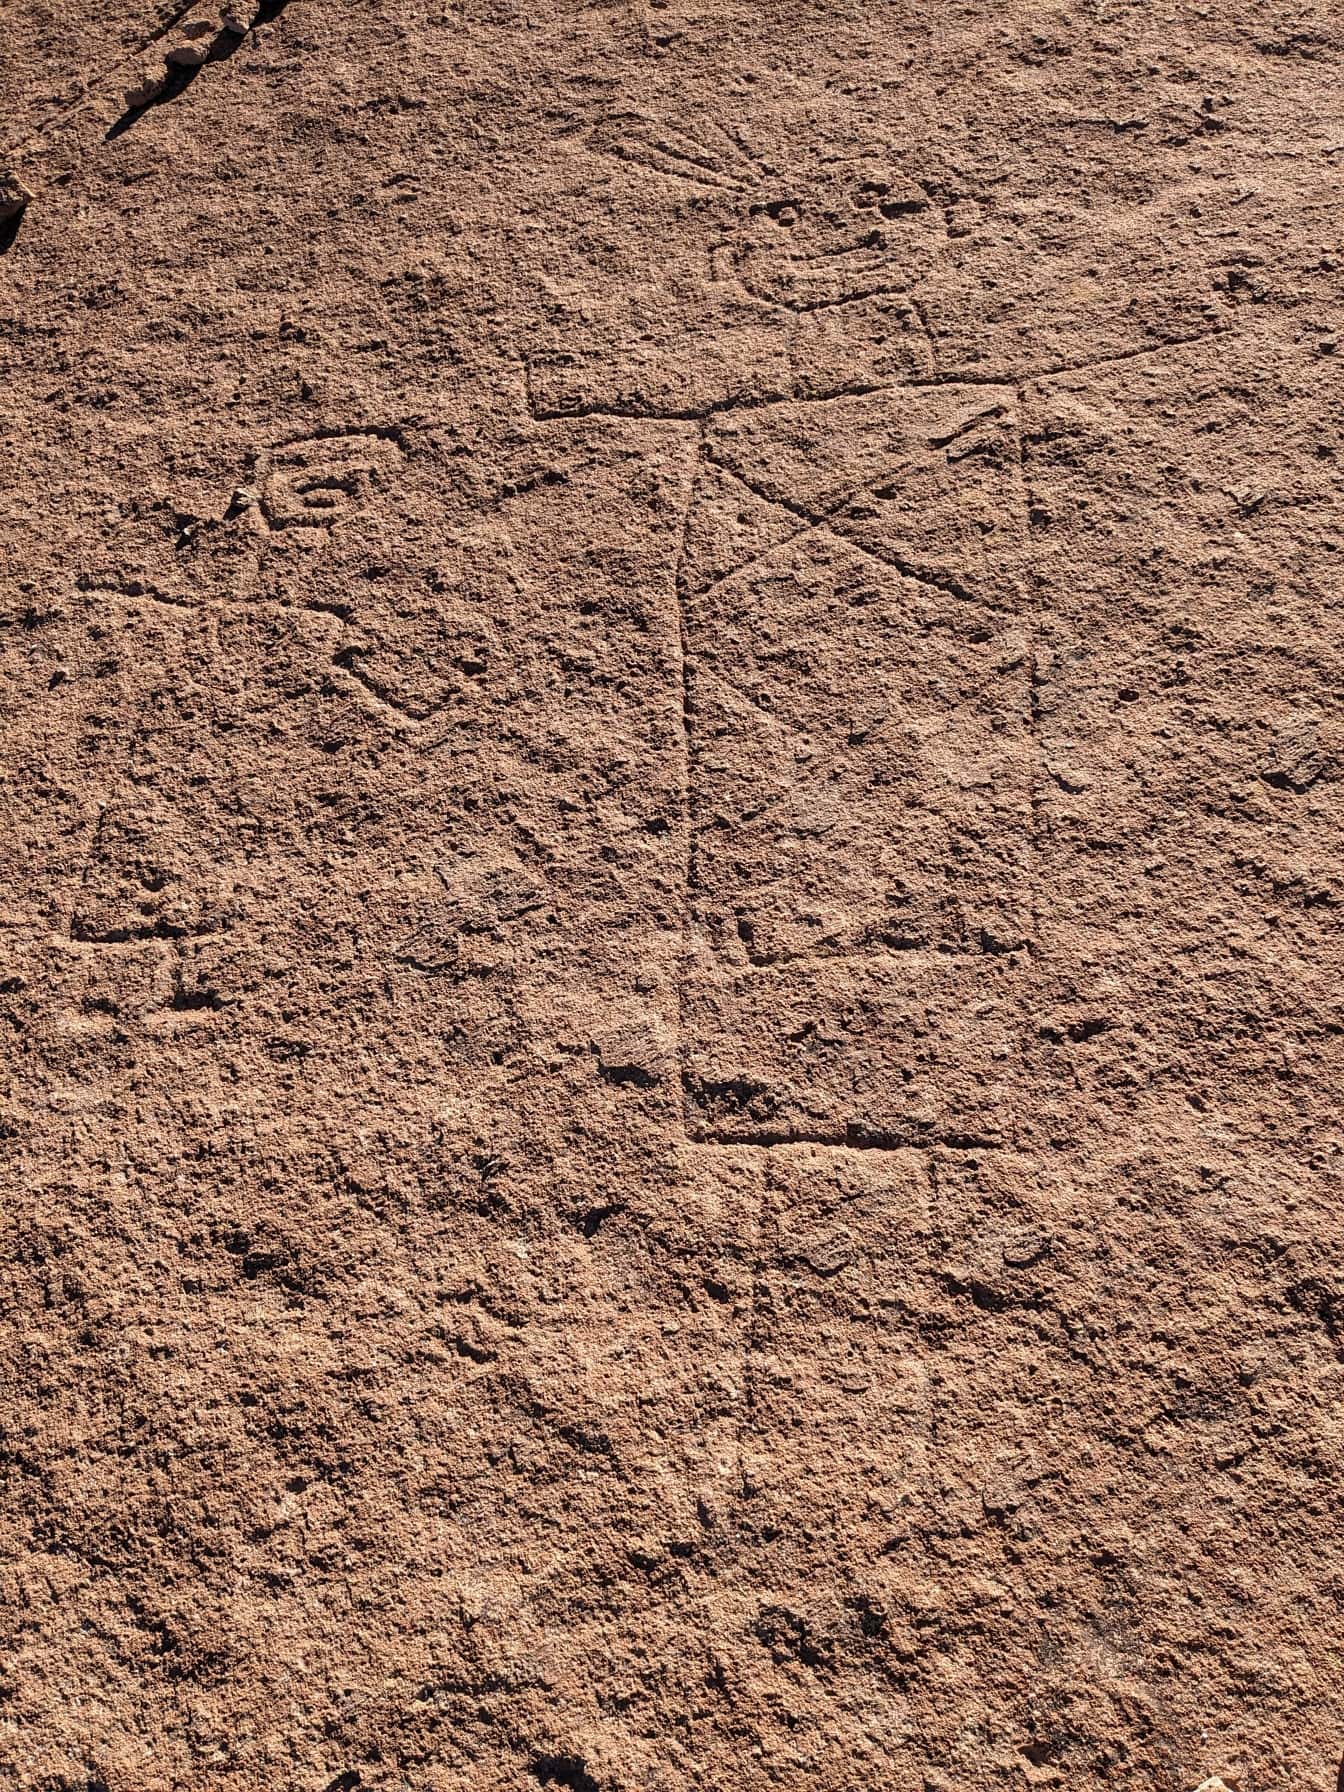 Oude naïeve rotstekeningen, een rotstekening vergelijkbaar met de Nazca-lijnen